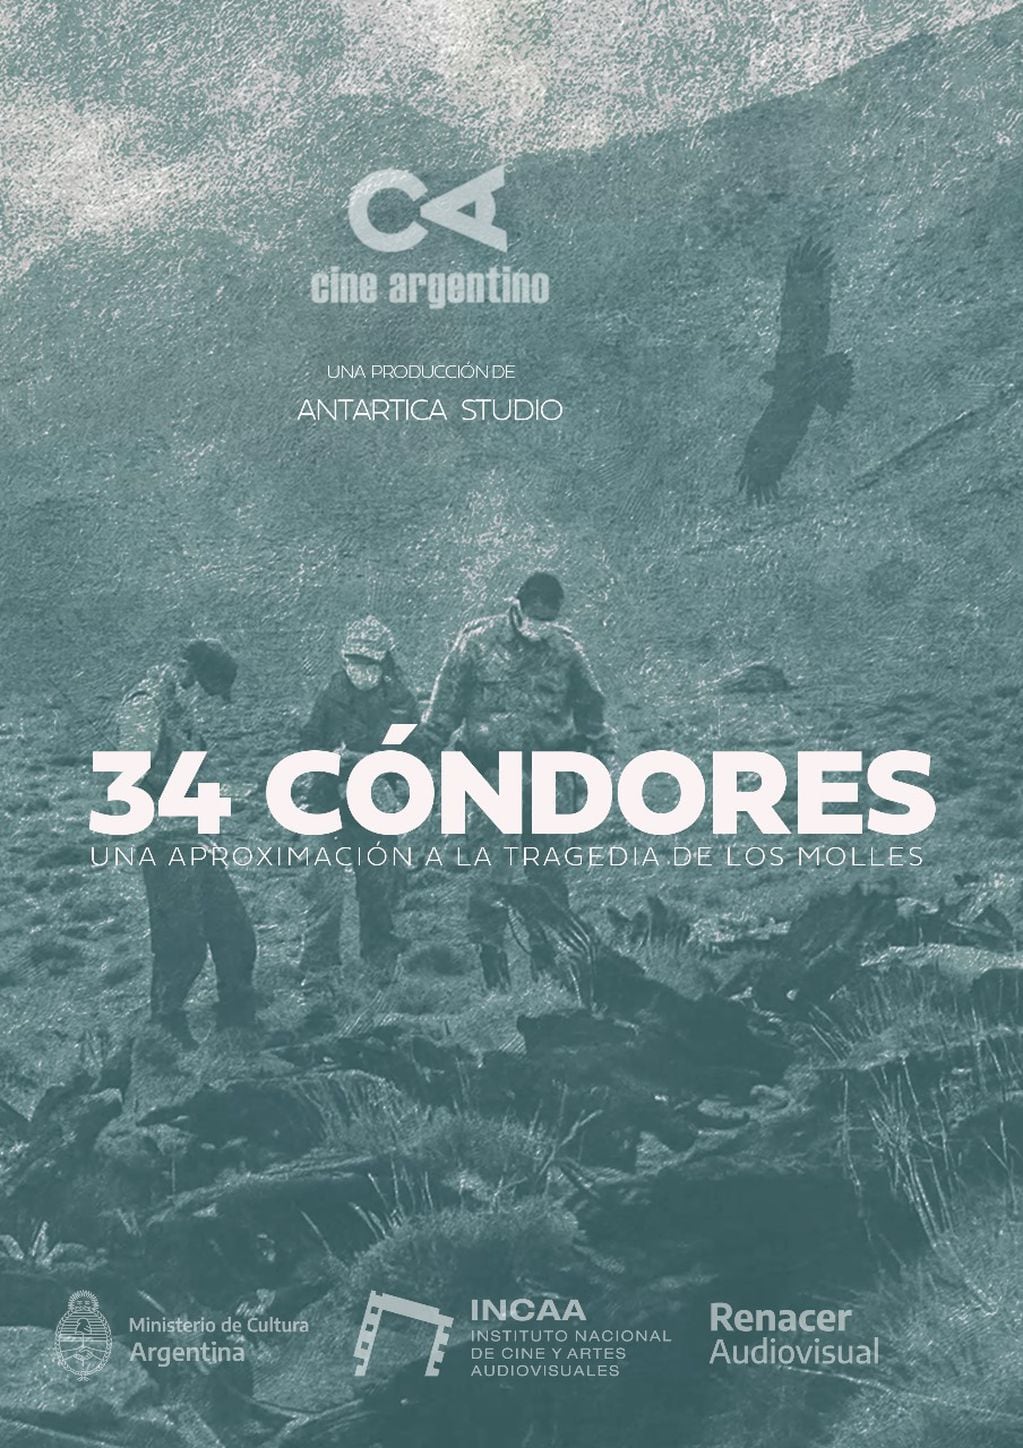 34 cóndores, el documental. Foto: Gentileza Gonzalo Iaconis.